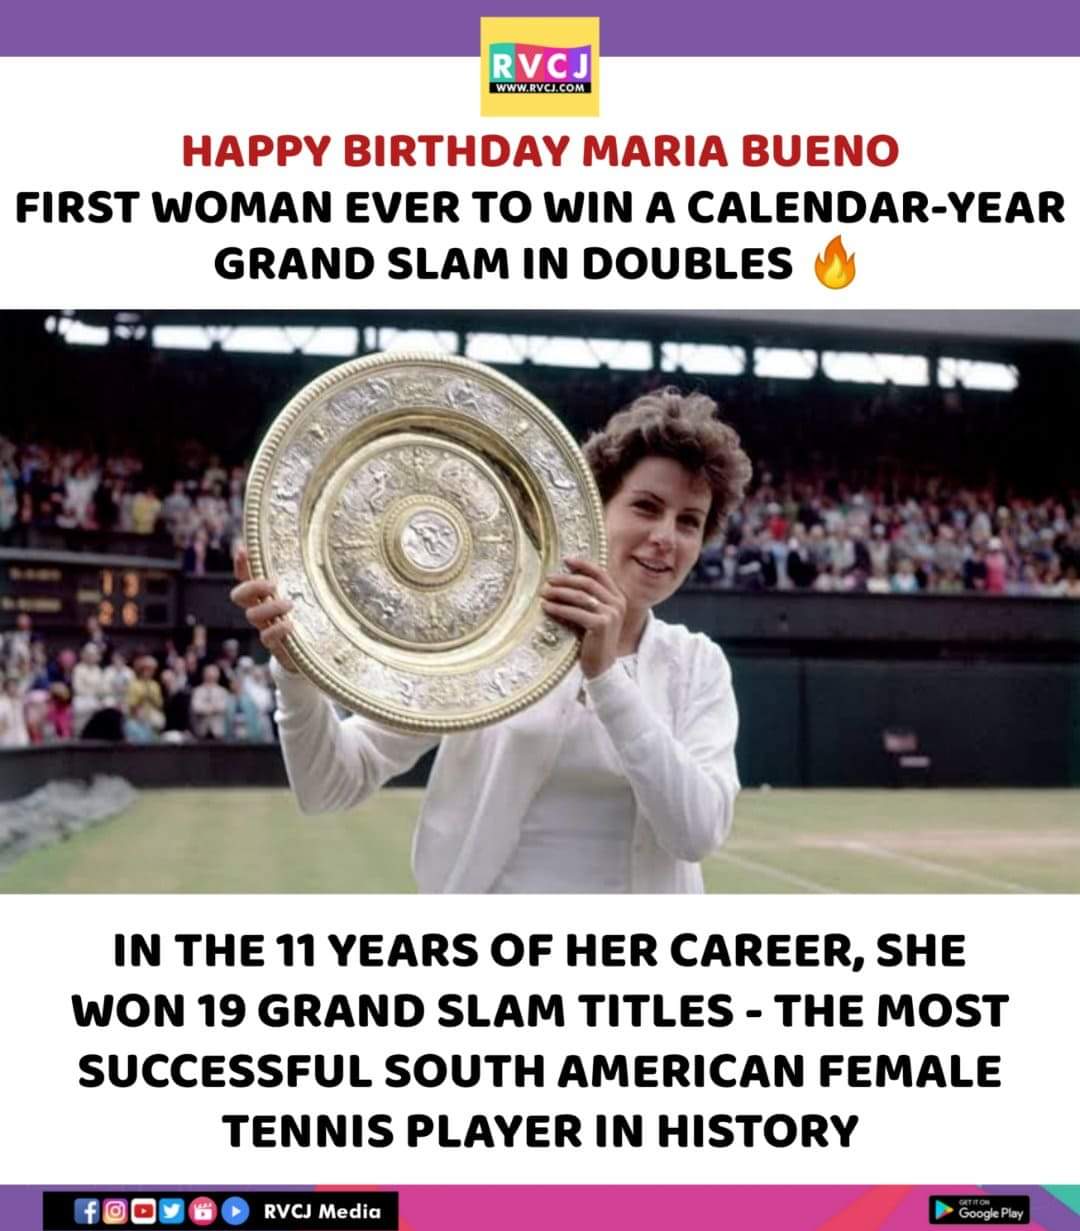 Happy birthday Maria Bueno! 